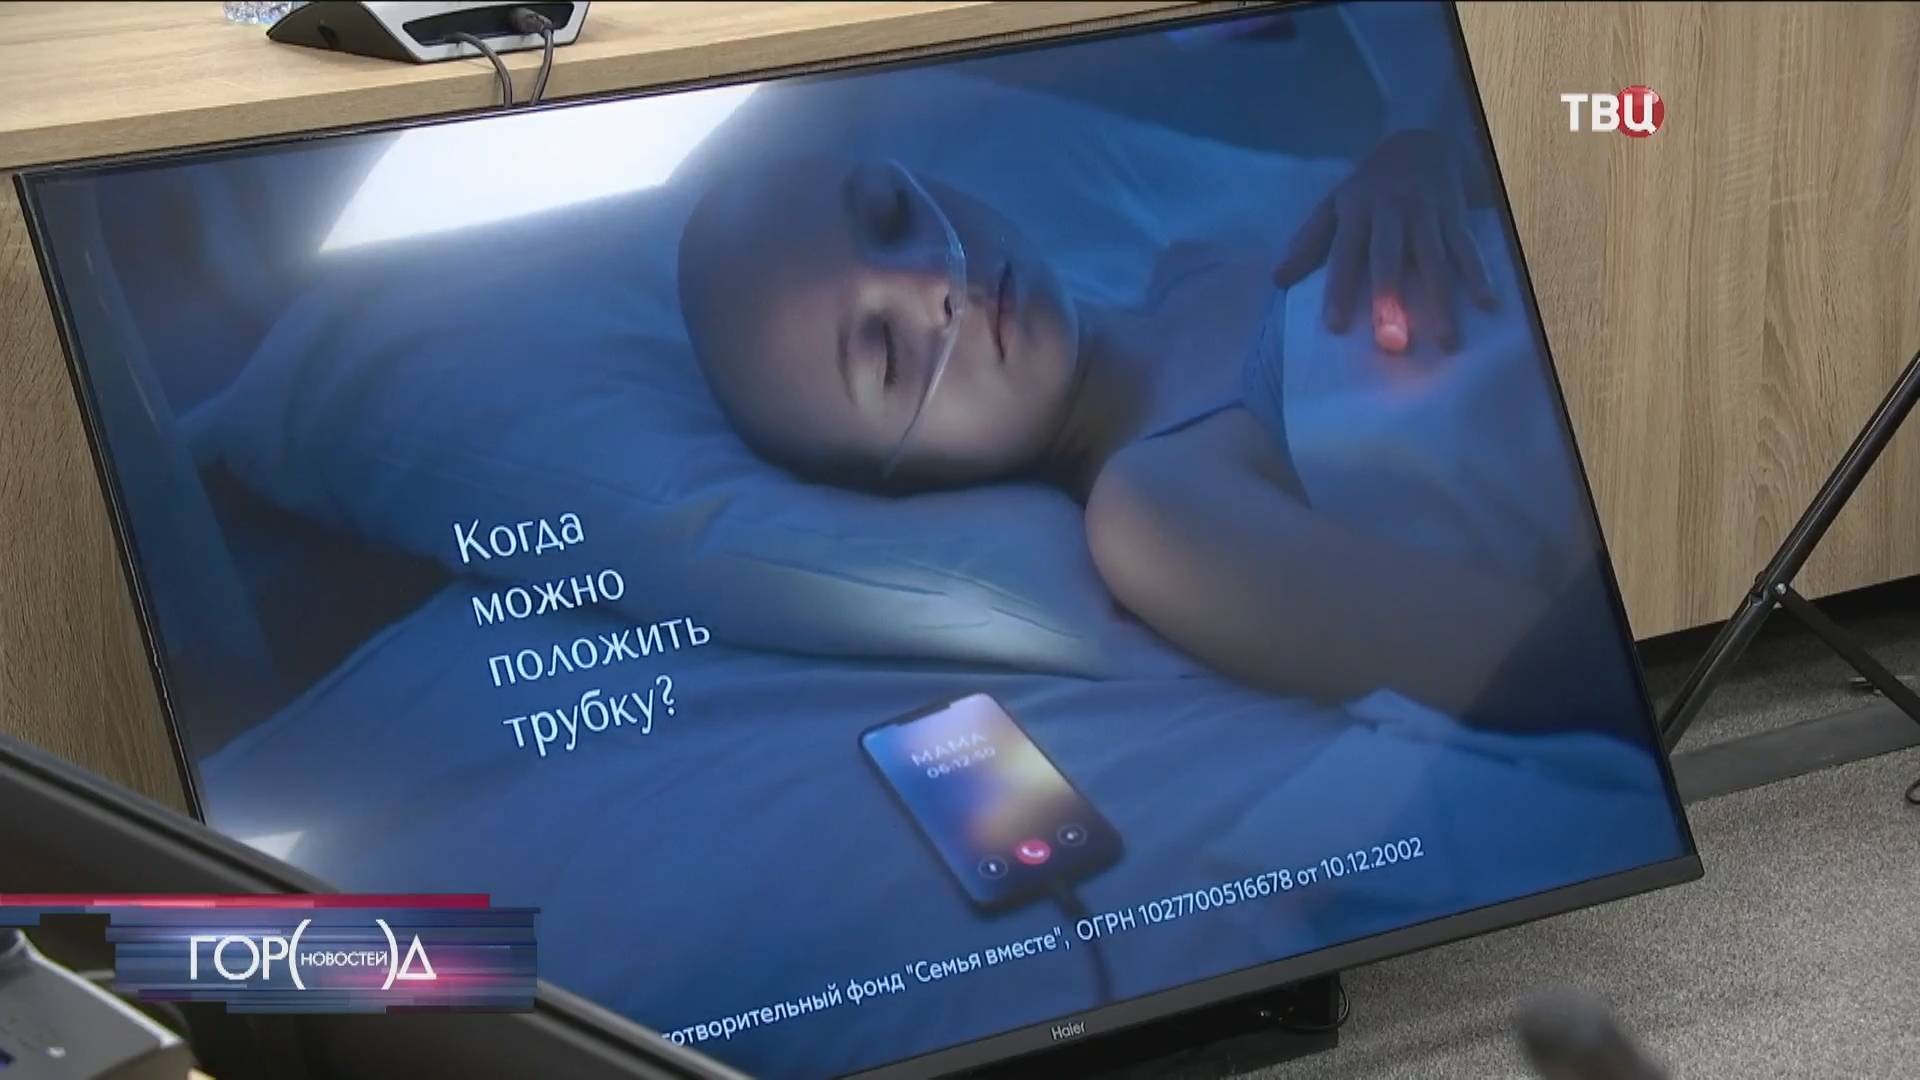 В Москве на территории детской больницы появится Семейный дом / Город новостей на ТВЦ